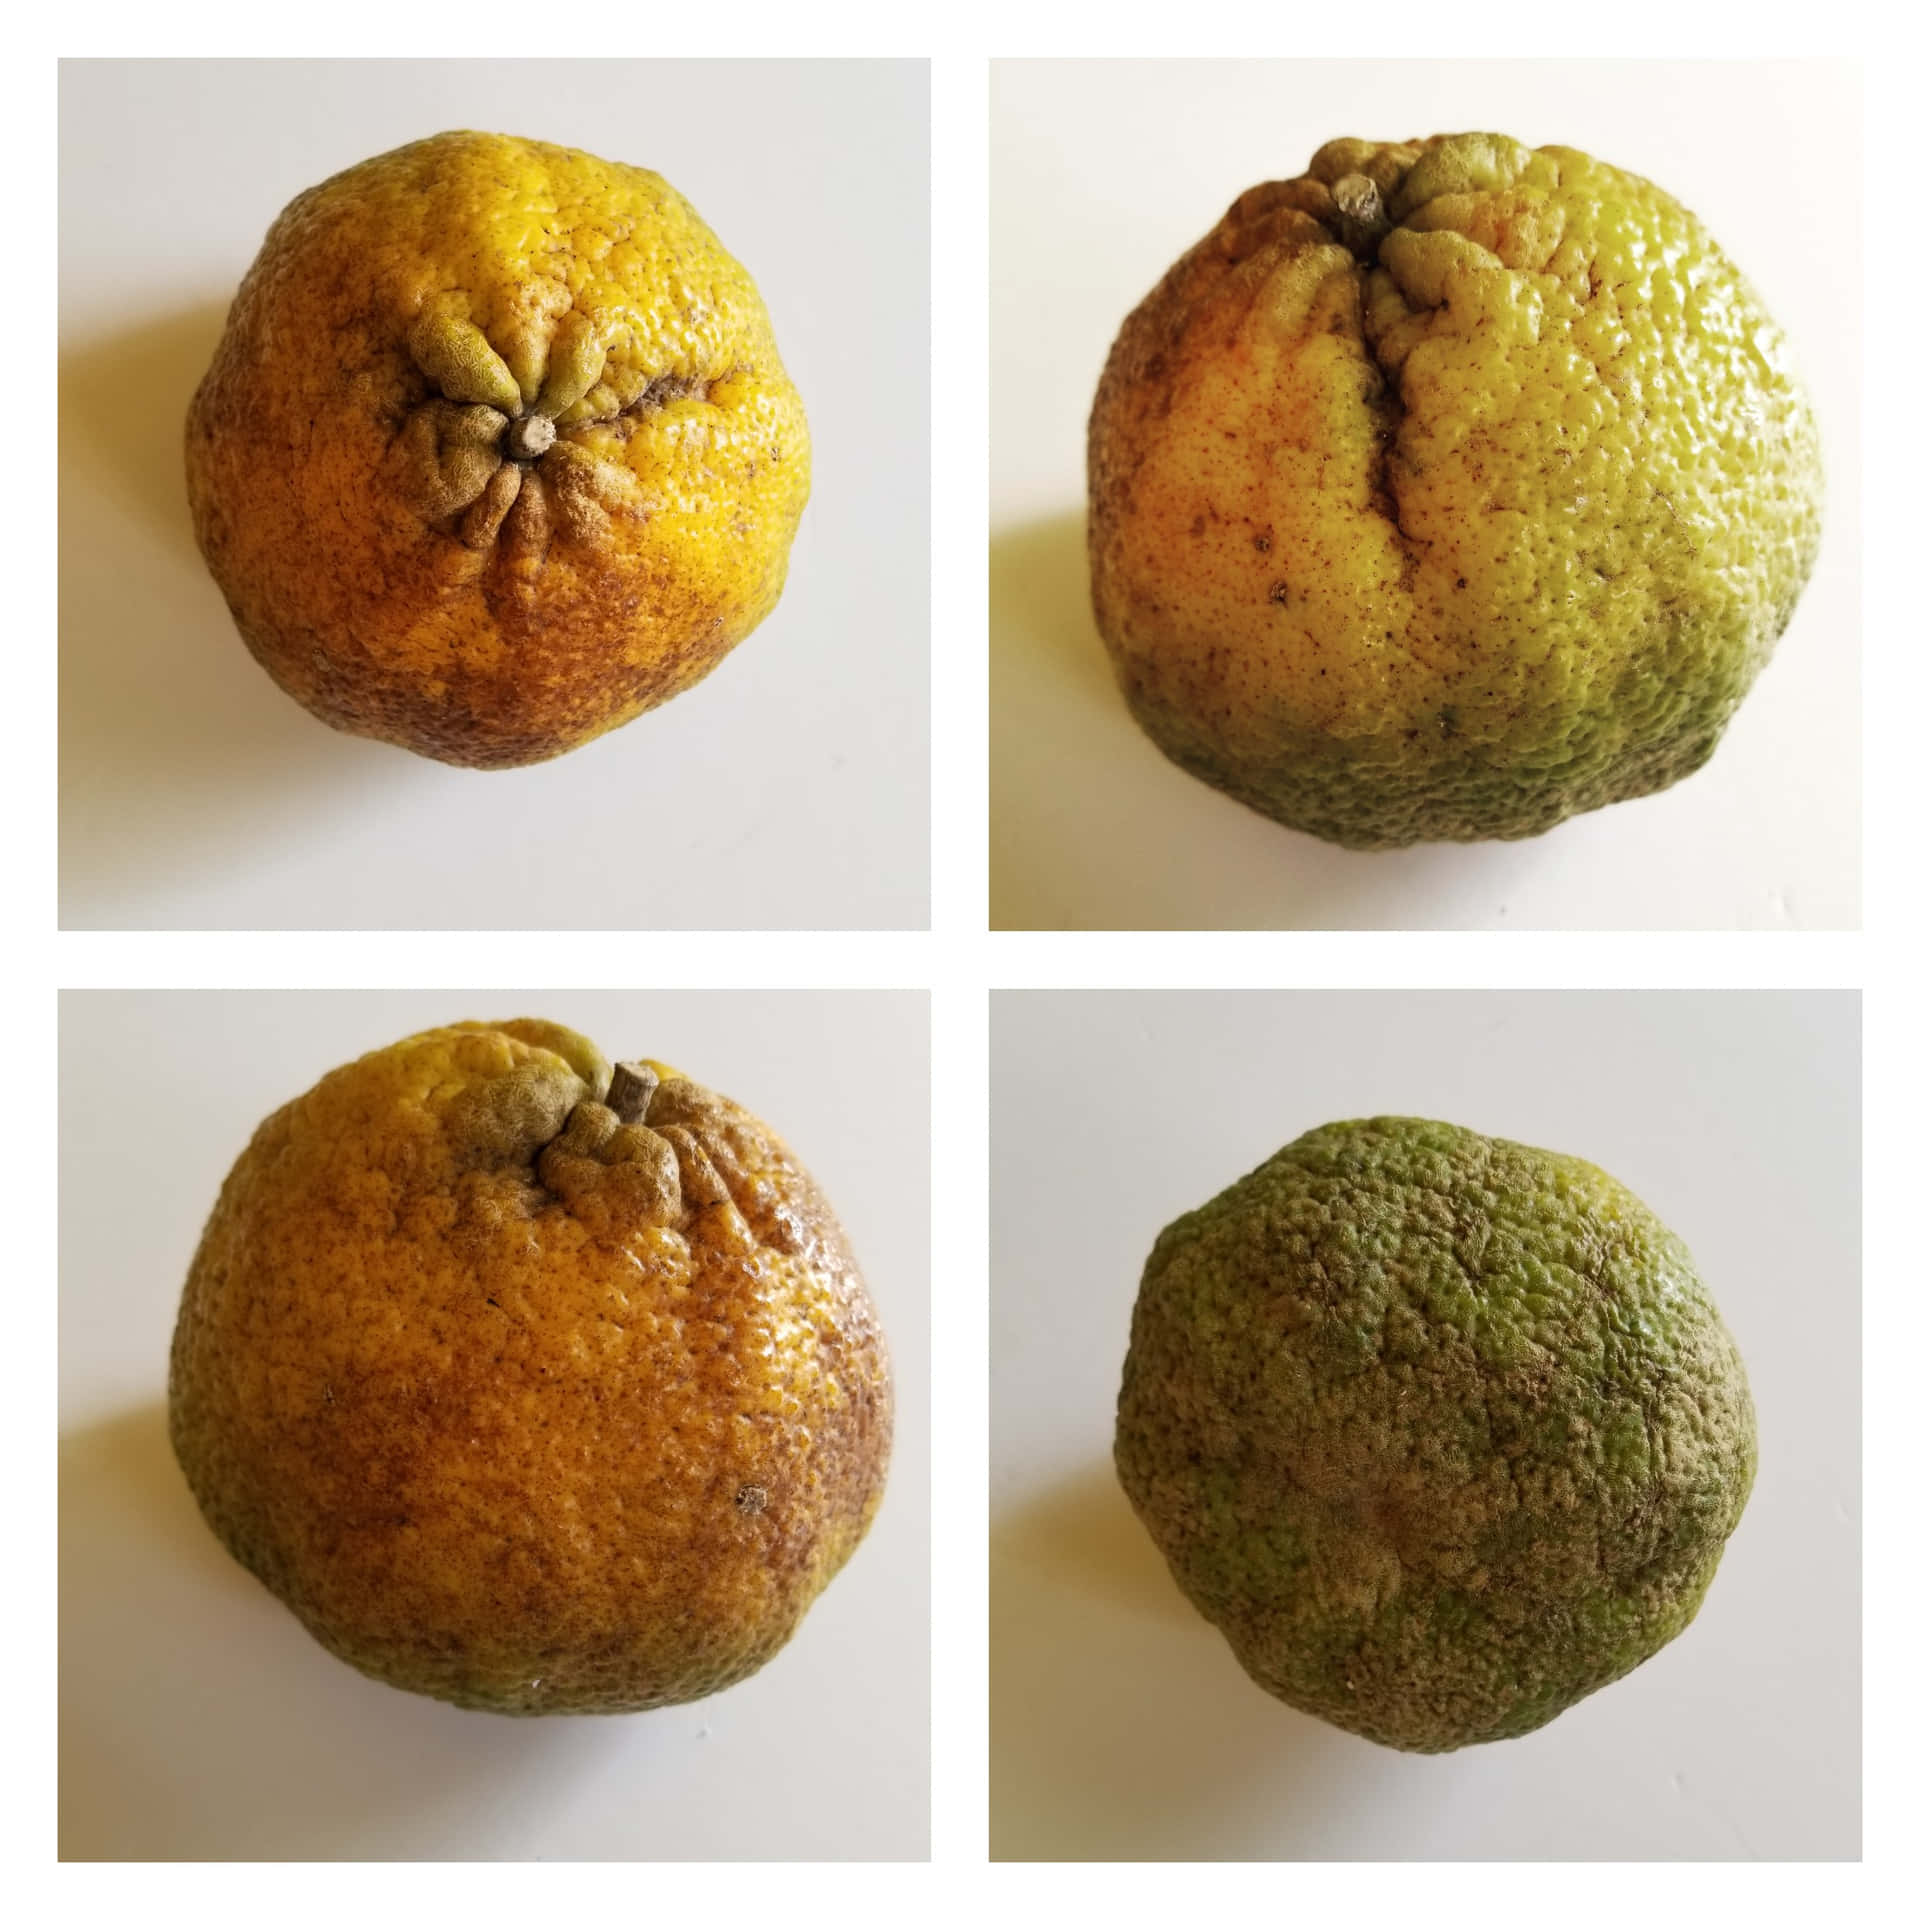 Organisksamling Av Ugli Citrus-frukter Wallpaper